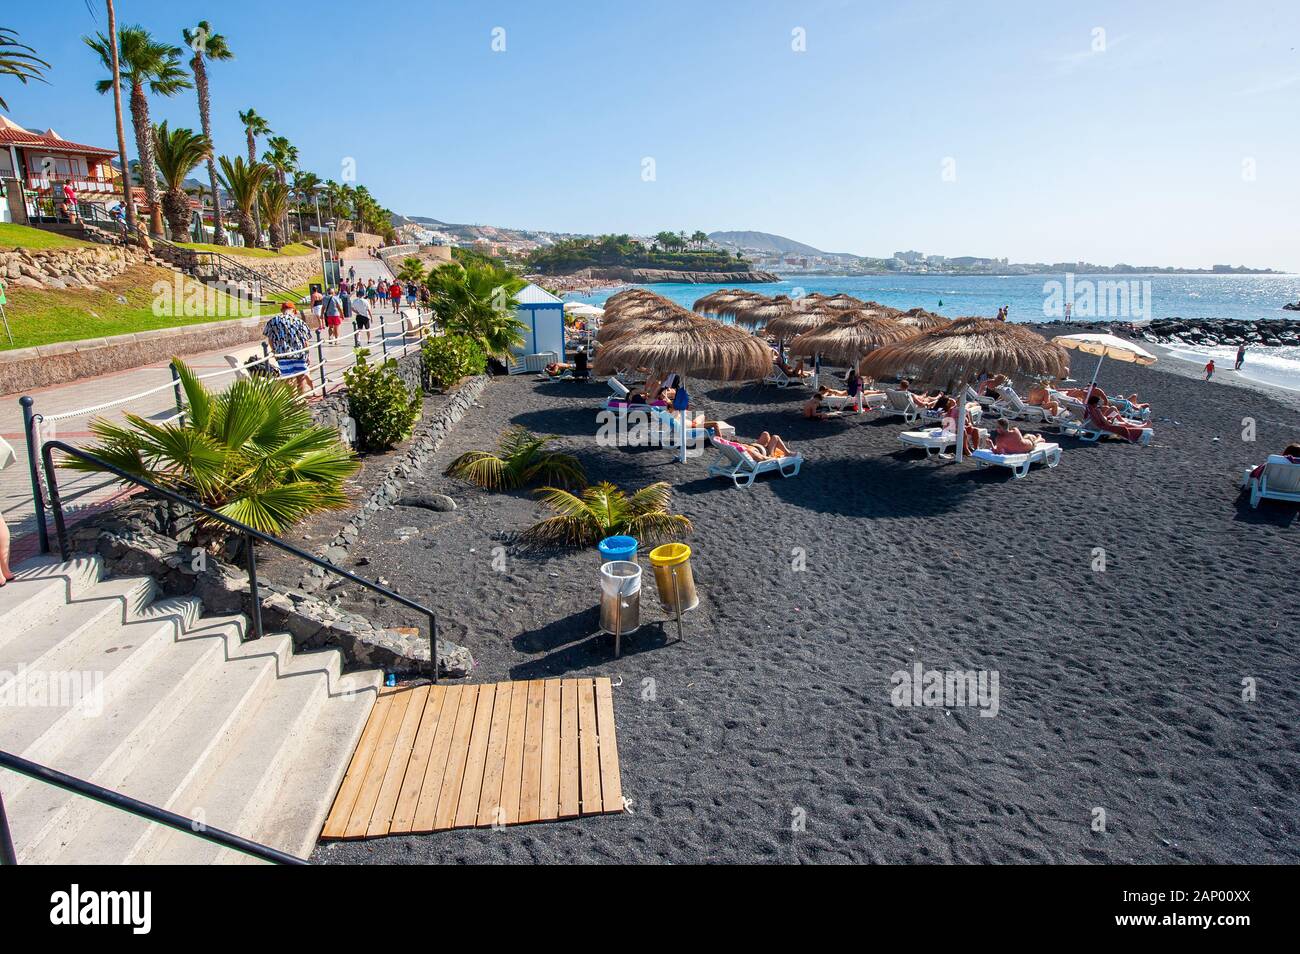 Île des Canaries Tenerife, Espagne - 27 déc, 2019 : les touristes sont de détente et de jouer sur une plage appelée Playa El Beril sur Ténérife. Une plage de gravier noir. Banque D'Images